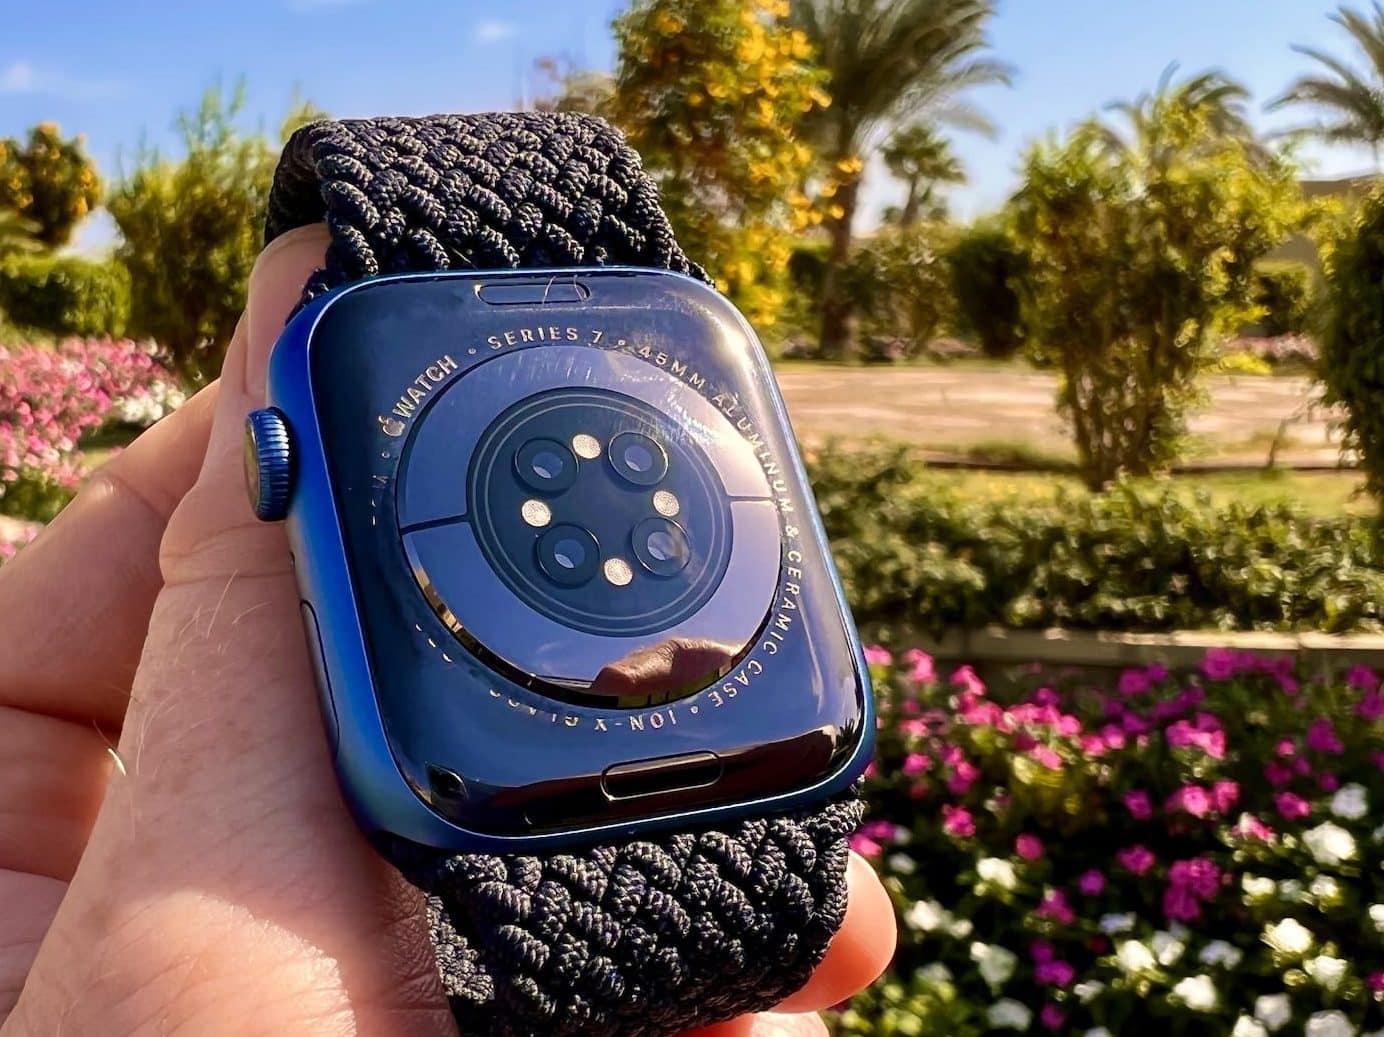 Die Apple Watch Series 7 er ideel til alle, der nogensinde har ejet en Apple Watch Brug serie 3 eller serie 4. Enhver, der bruger Series 6, behøver ikke nødvendigvis at skifte. Foto: Sascha Tegtmeyer Alt i alt er den Apple Watch et ekstremt alsidigt og anvendeligt sportsur, der tilbyder atleter og aktive mennesker et væld af funktioner. Uanset om du svømmer i havet, jogger på stranden eller bare i hverdagen - den Apple Watch er en pålidelig følgesvend, der hjælper os med at nå vores mål og holde øje med vores helbred.